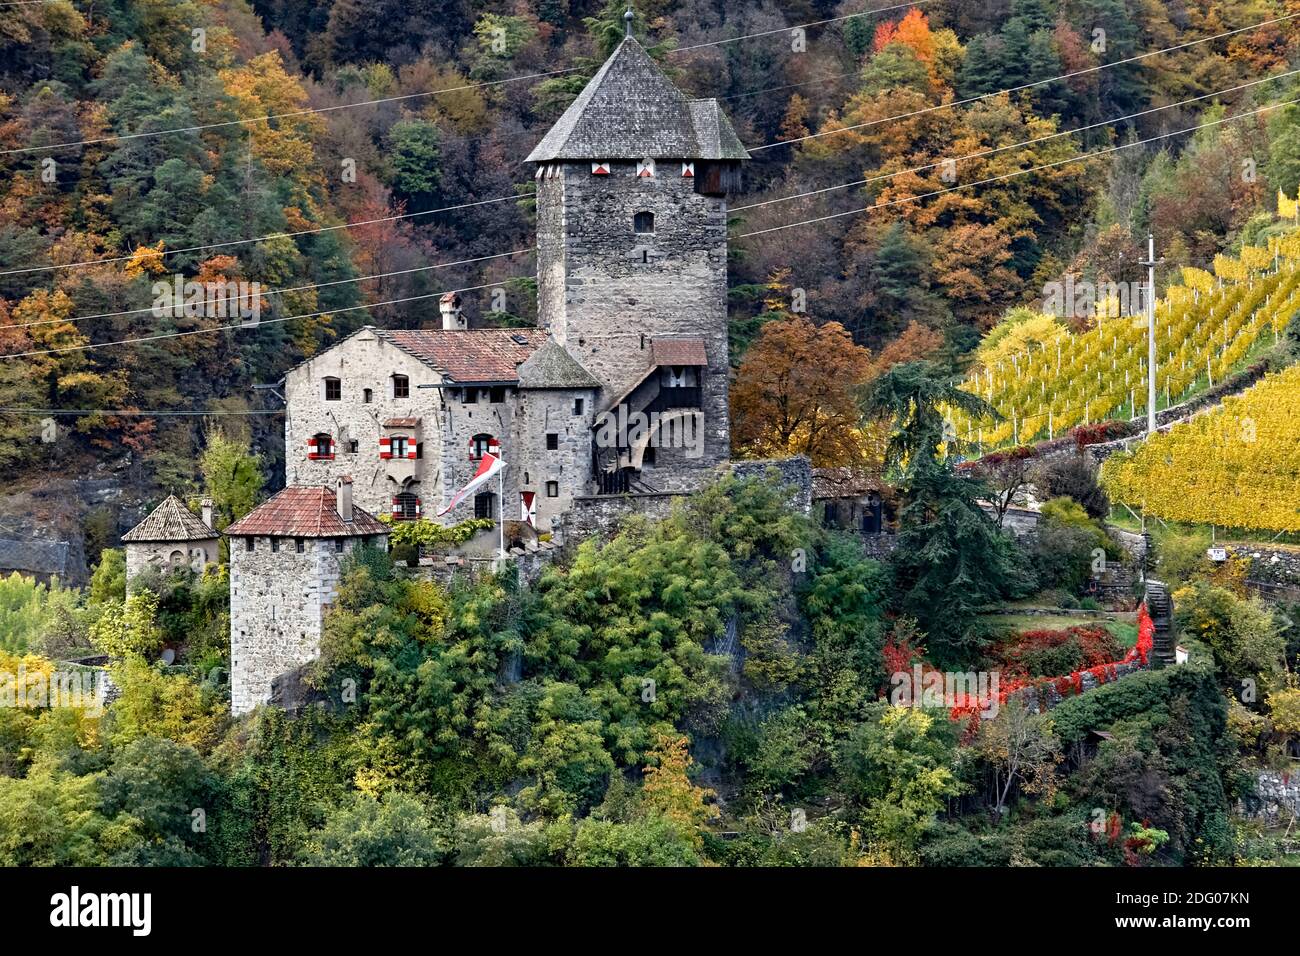 Le château de Branzoll est un bâtiment fortifié du XIIIe siècle à Chiusa. Vallée d'Isarco, province de Bolzano, Trentin-Haut-Adige, Italie, Europe. Banque D'Images